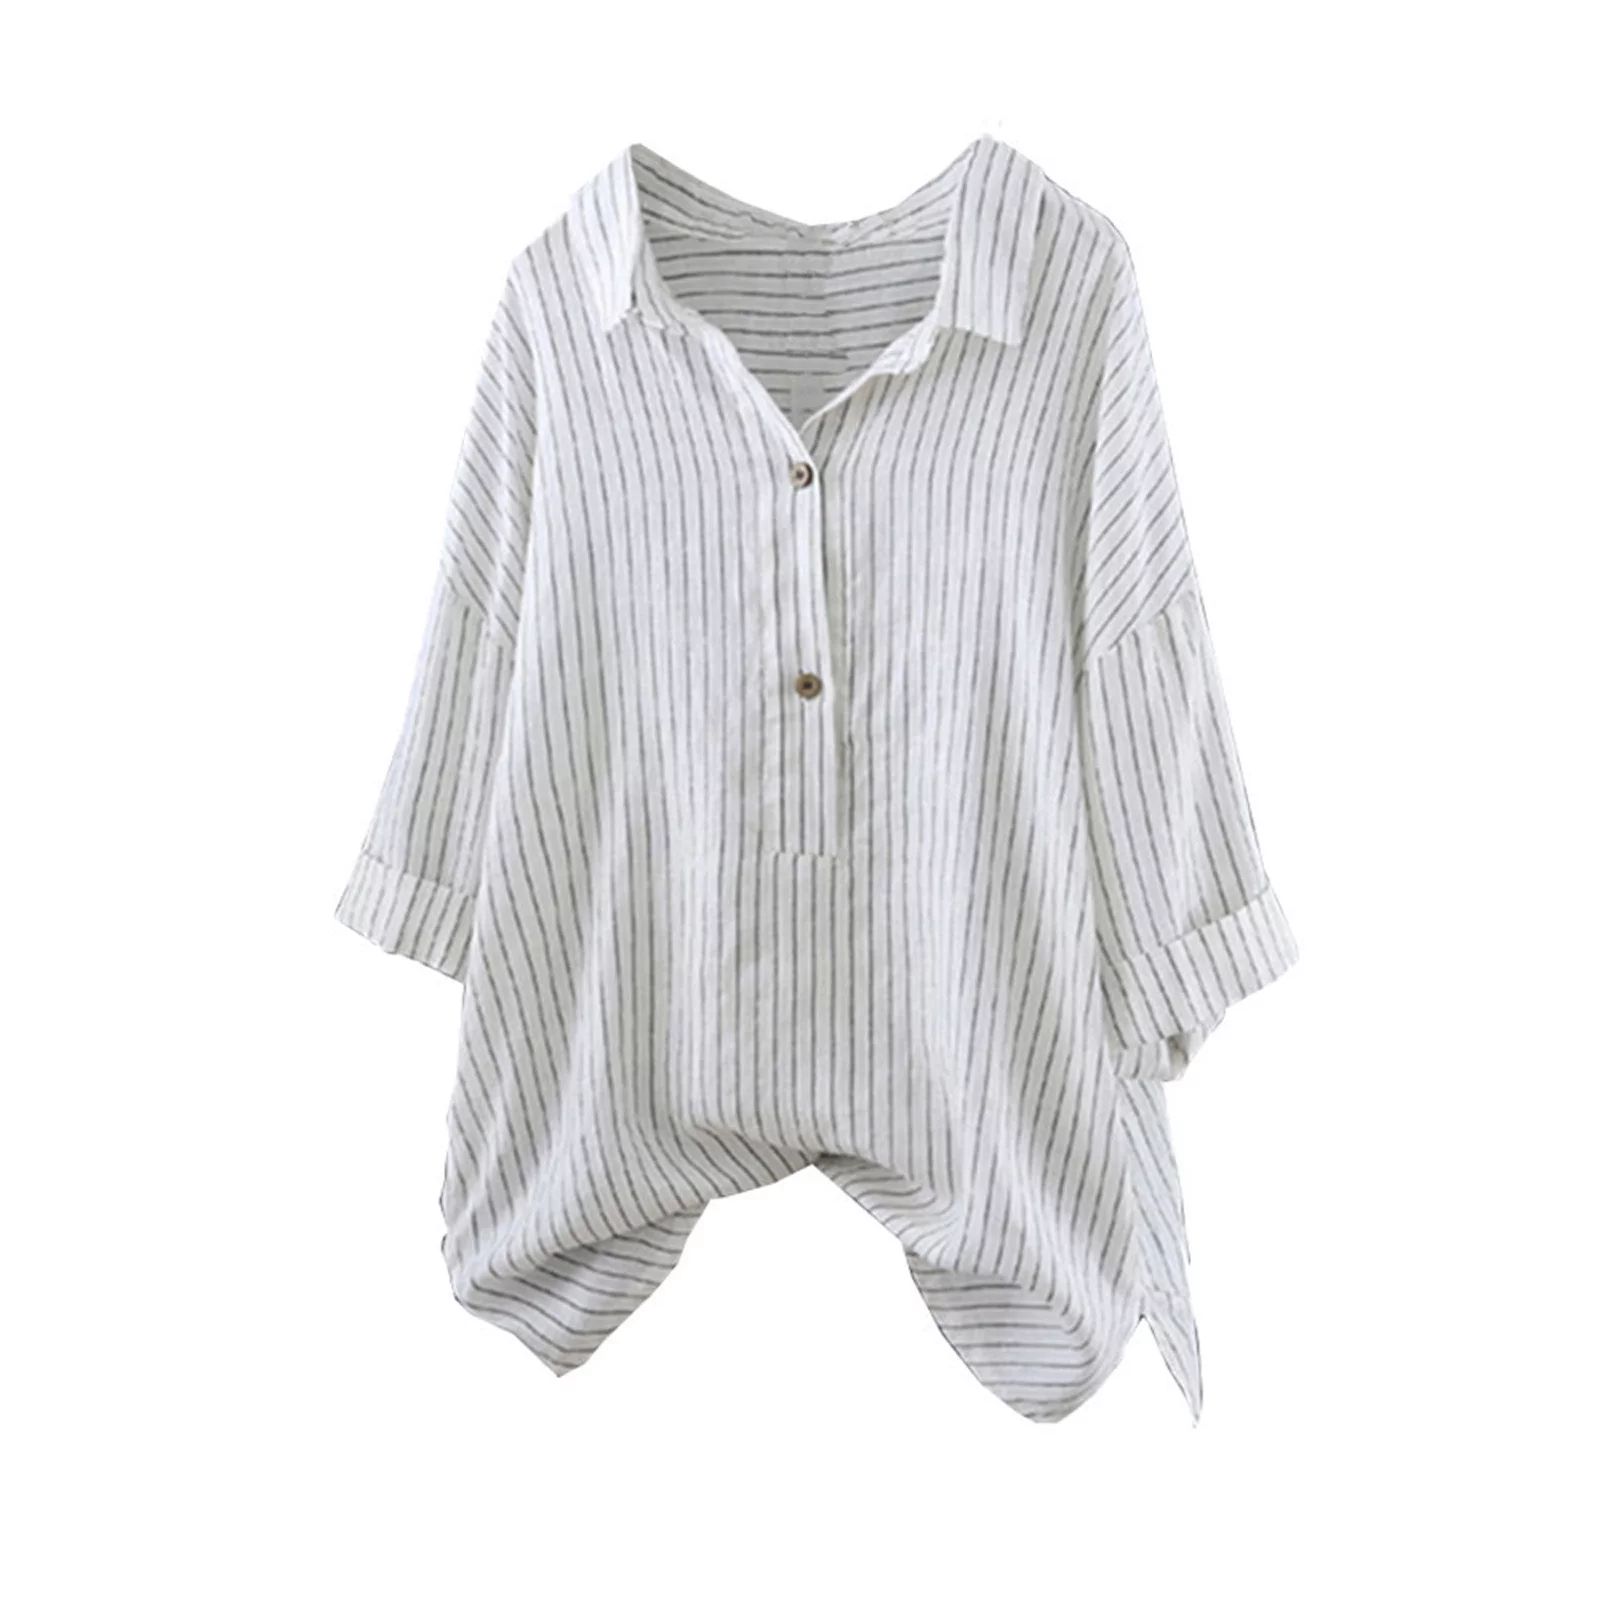 Bescita Women Cotton And Linen Button Up Pullover Striped Top T Shirt Tunic Blouse | Walmart (US)